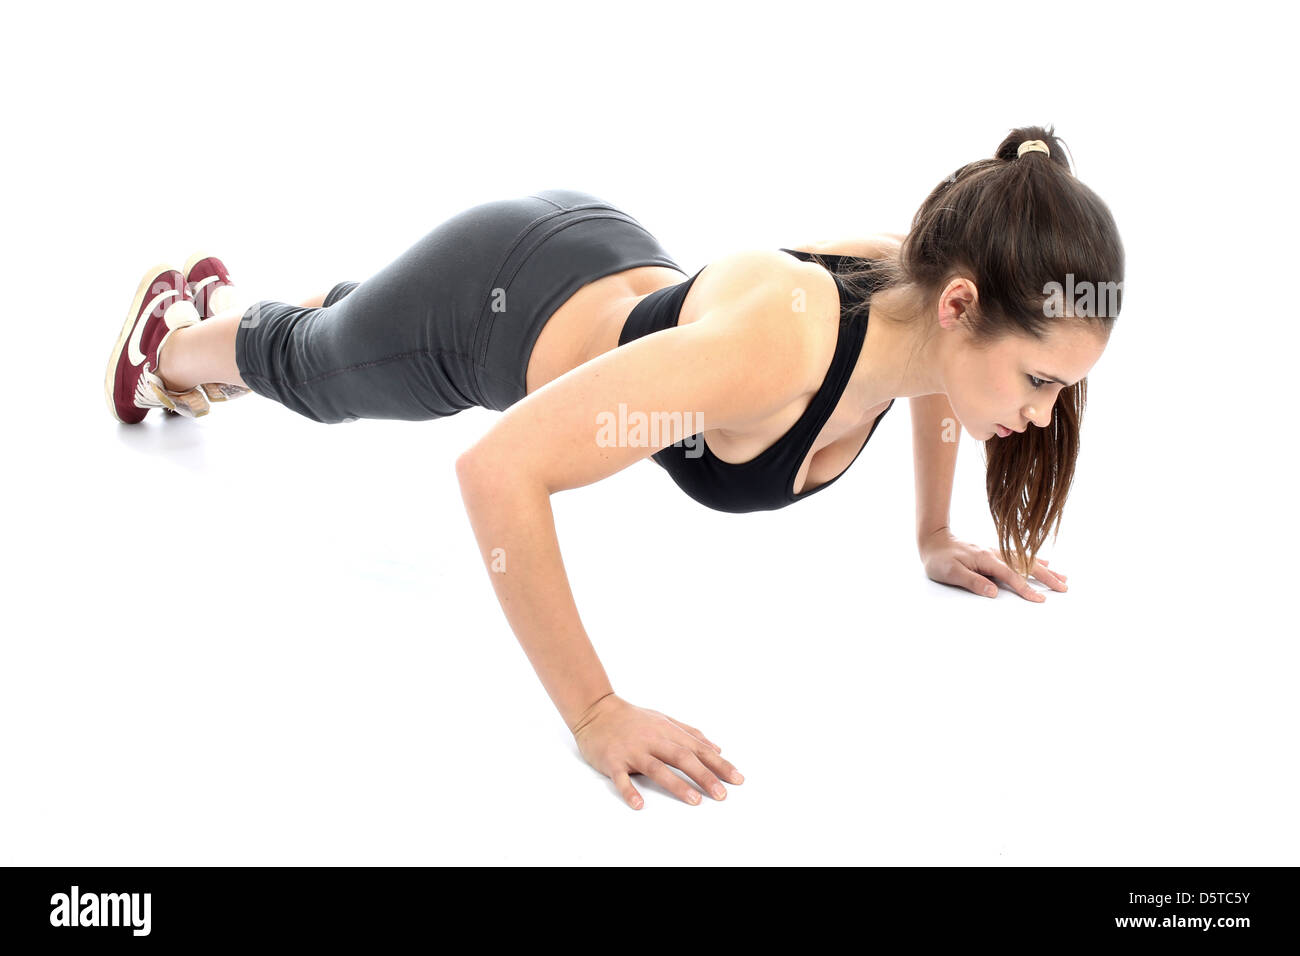 Jeune femme Positive confiant d'effectuer les exercices au sol dans le cadre d'une routine d'entraînement de forme physique isolé sur un fond blanc avec Clipping Path Banque D'Images